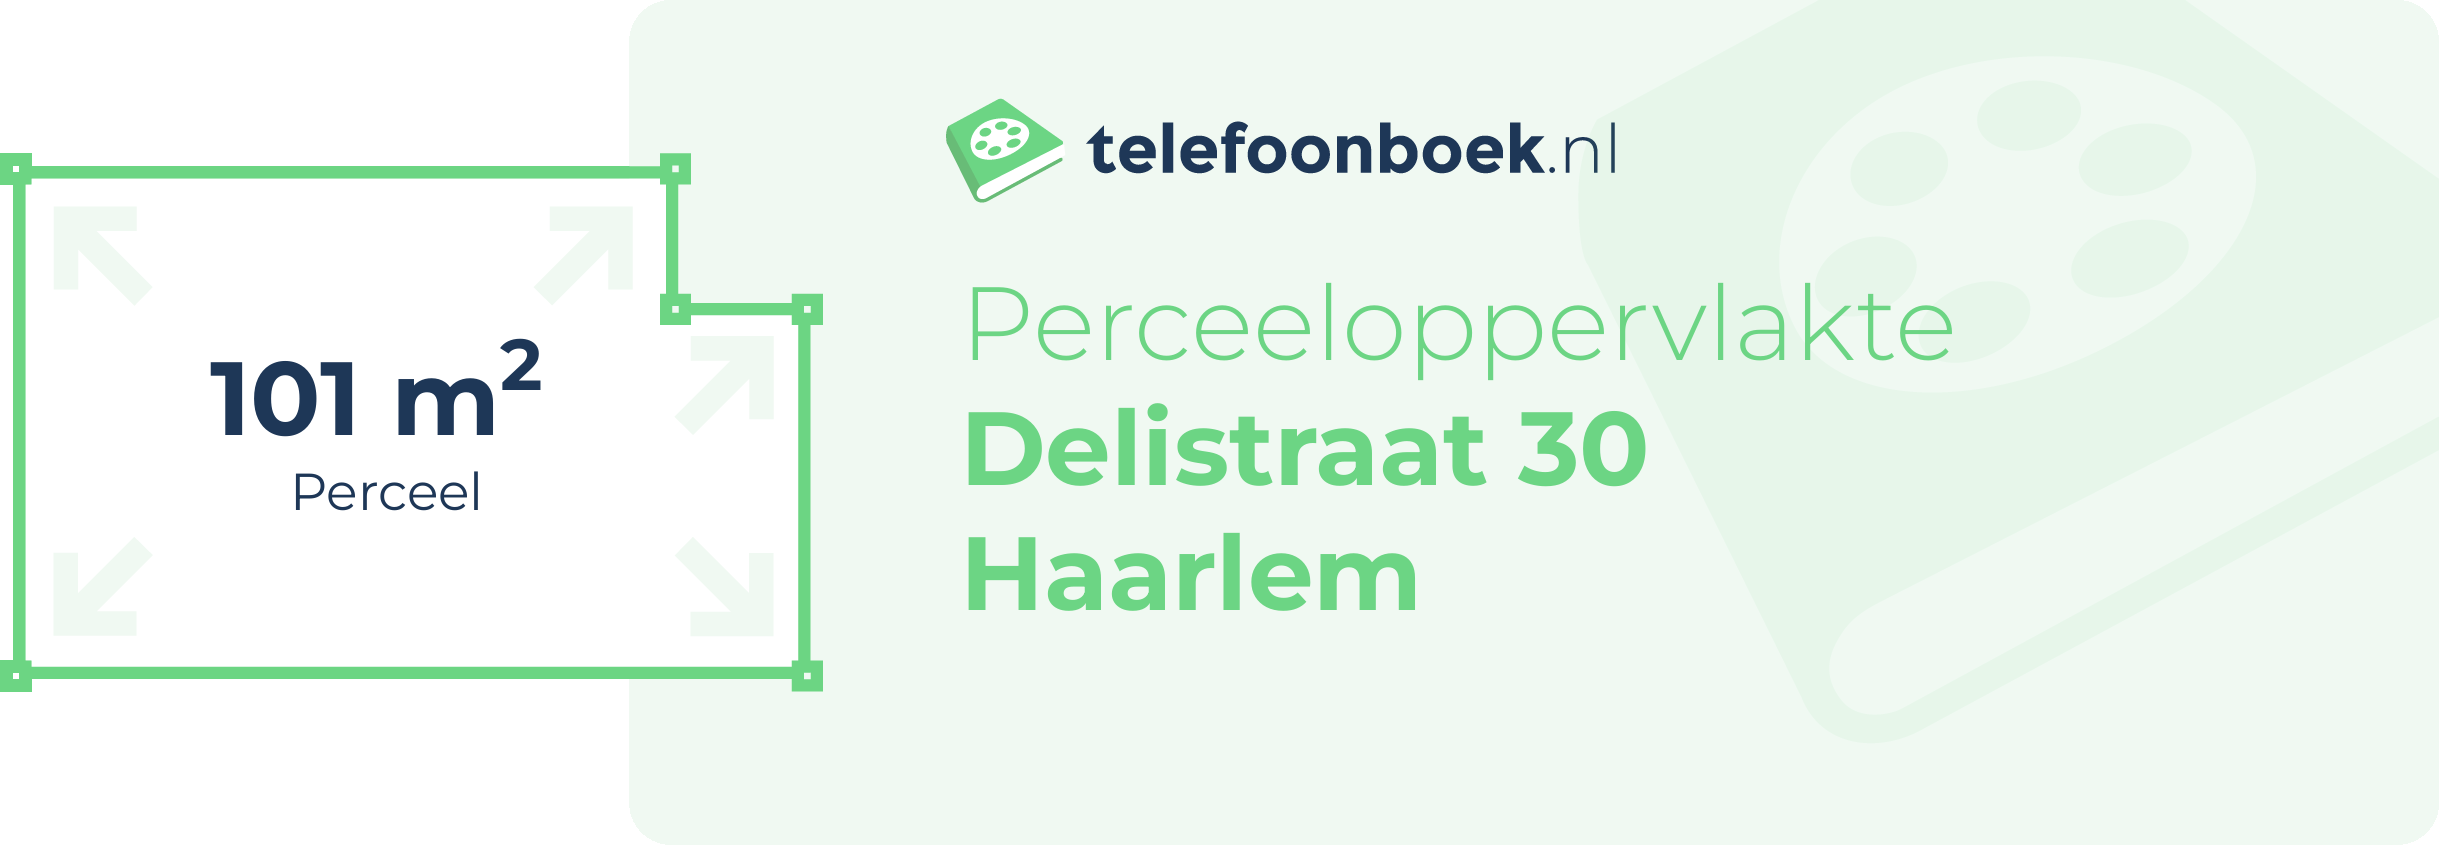 Perceeloppervlakte Delistraat 30 Haarlem